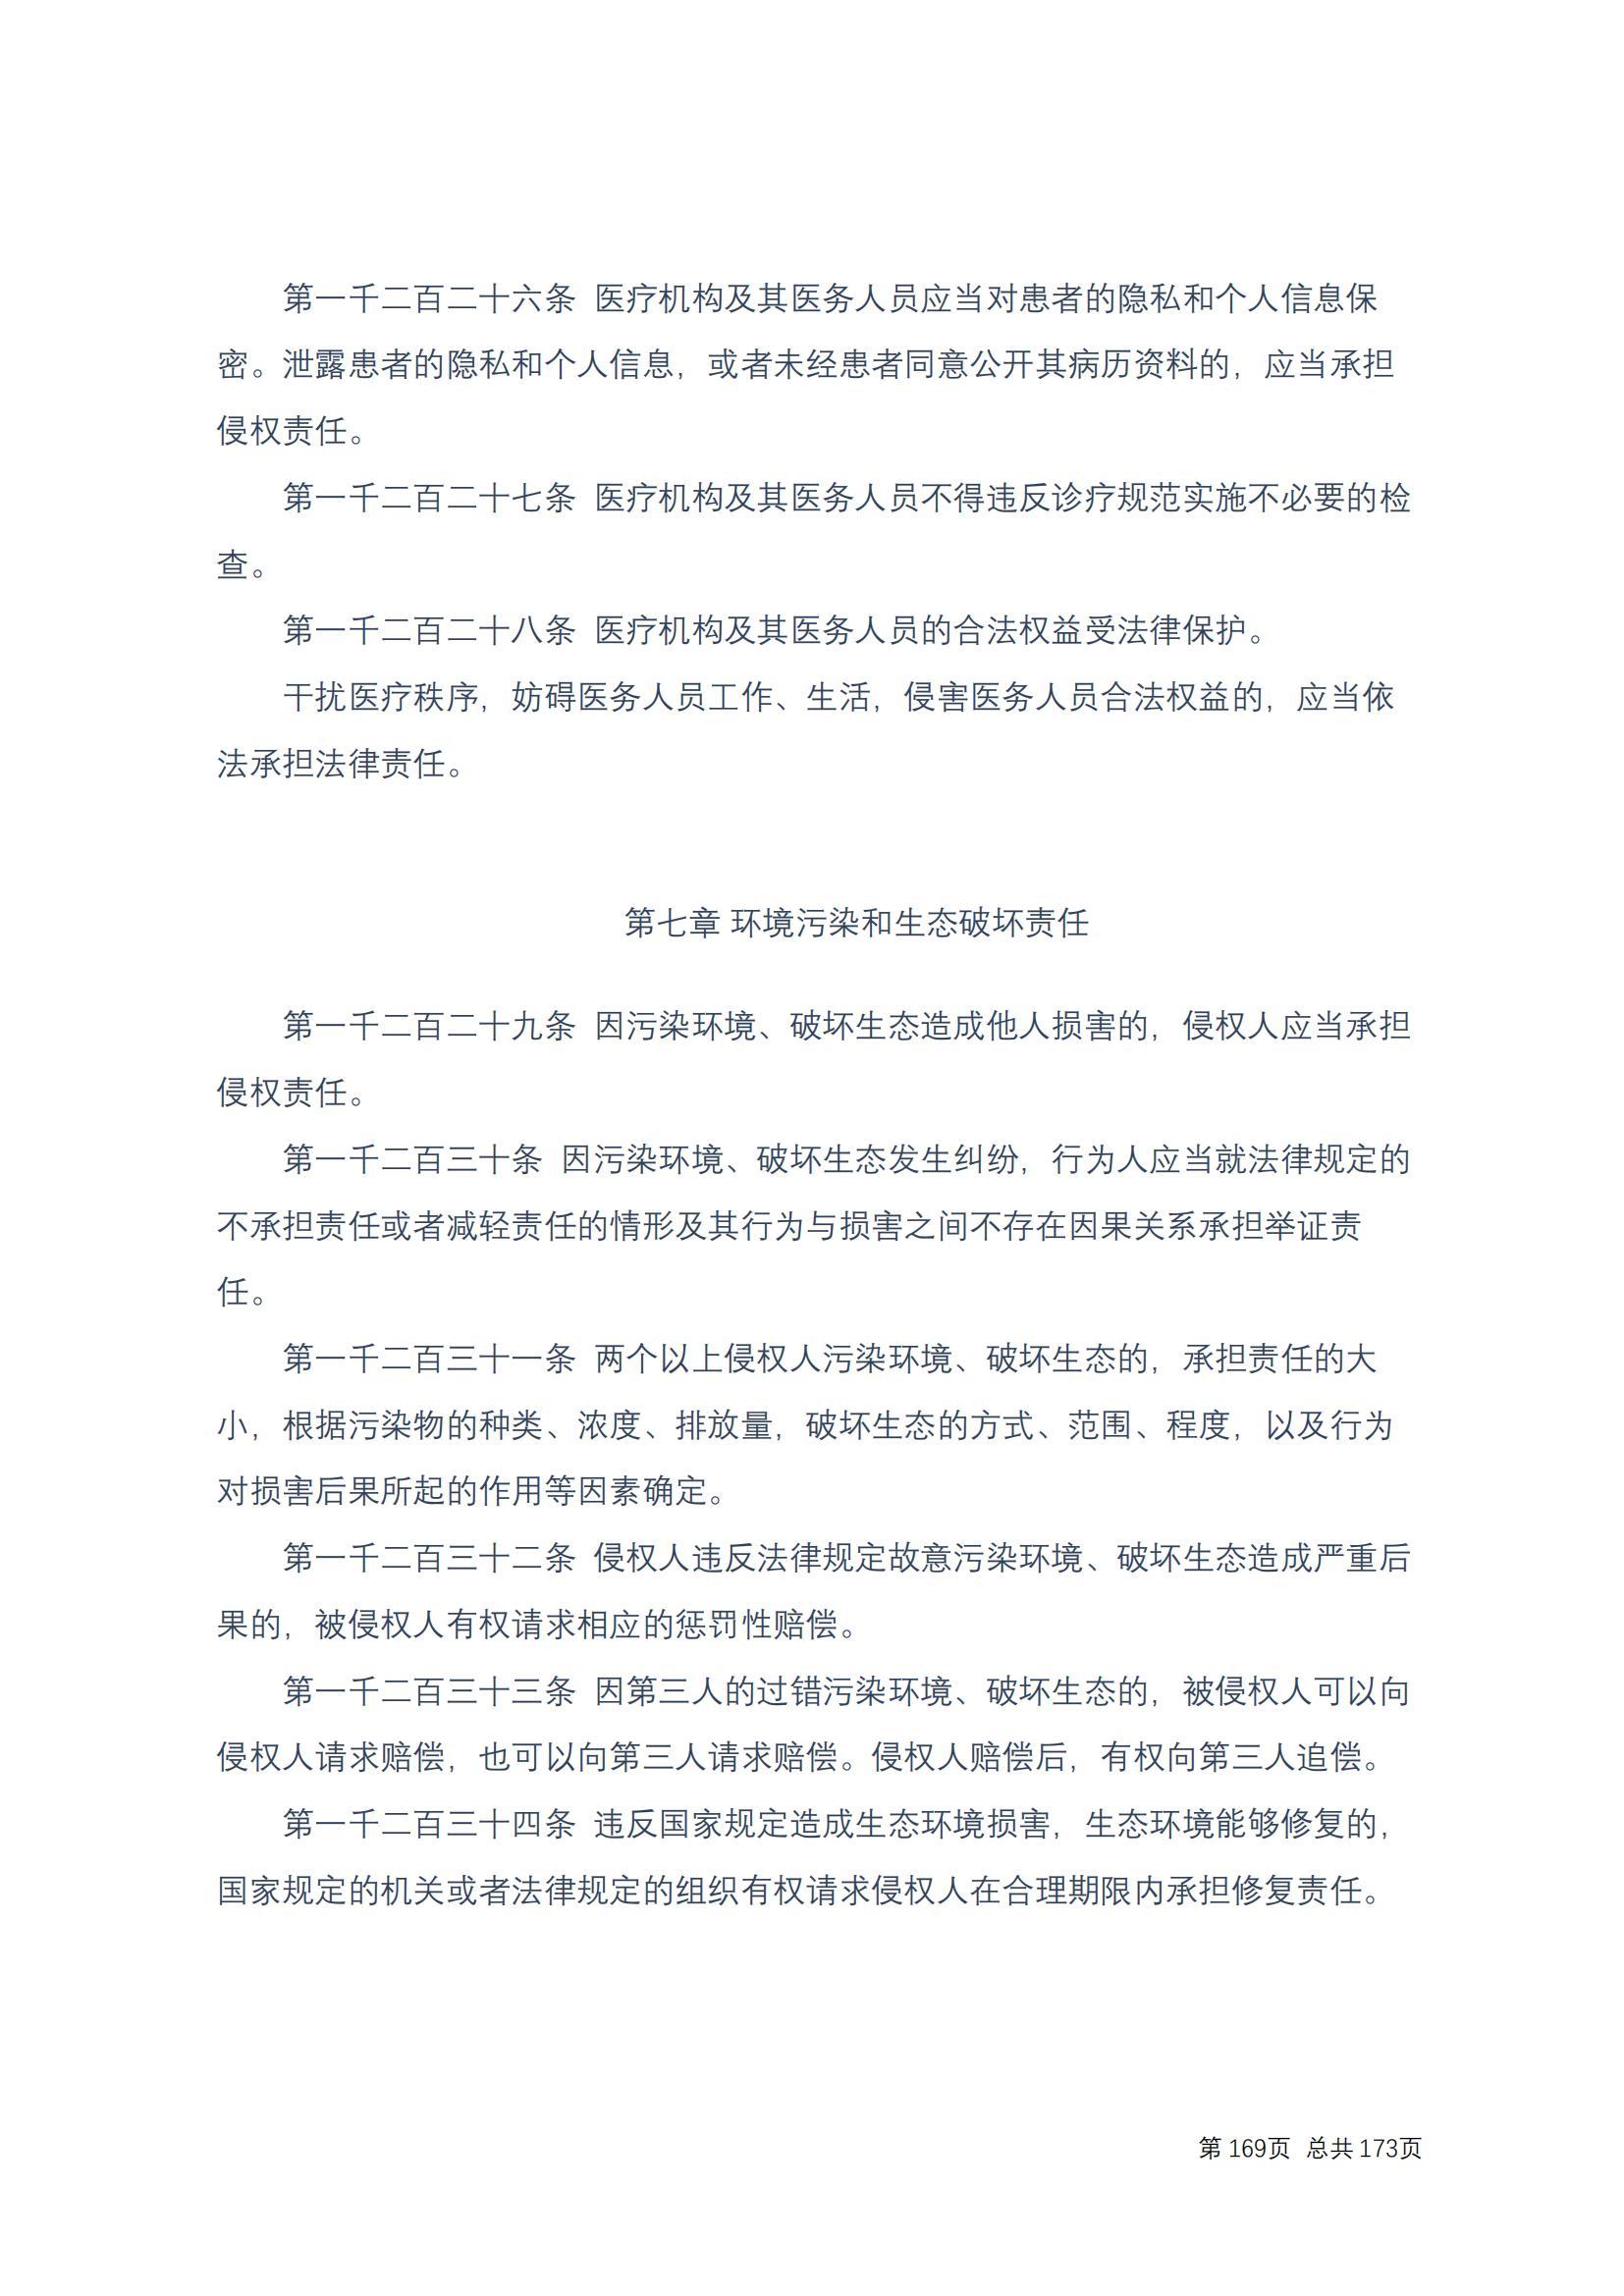 中华人民共和国民法典 修改过_168